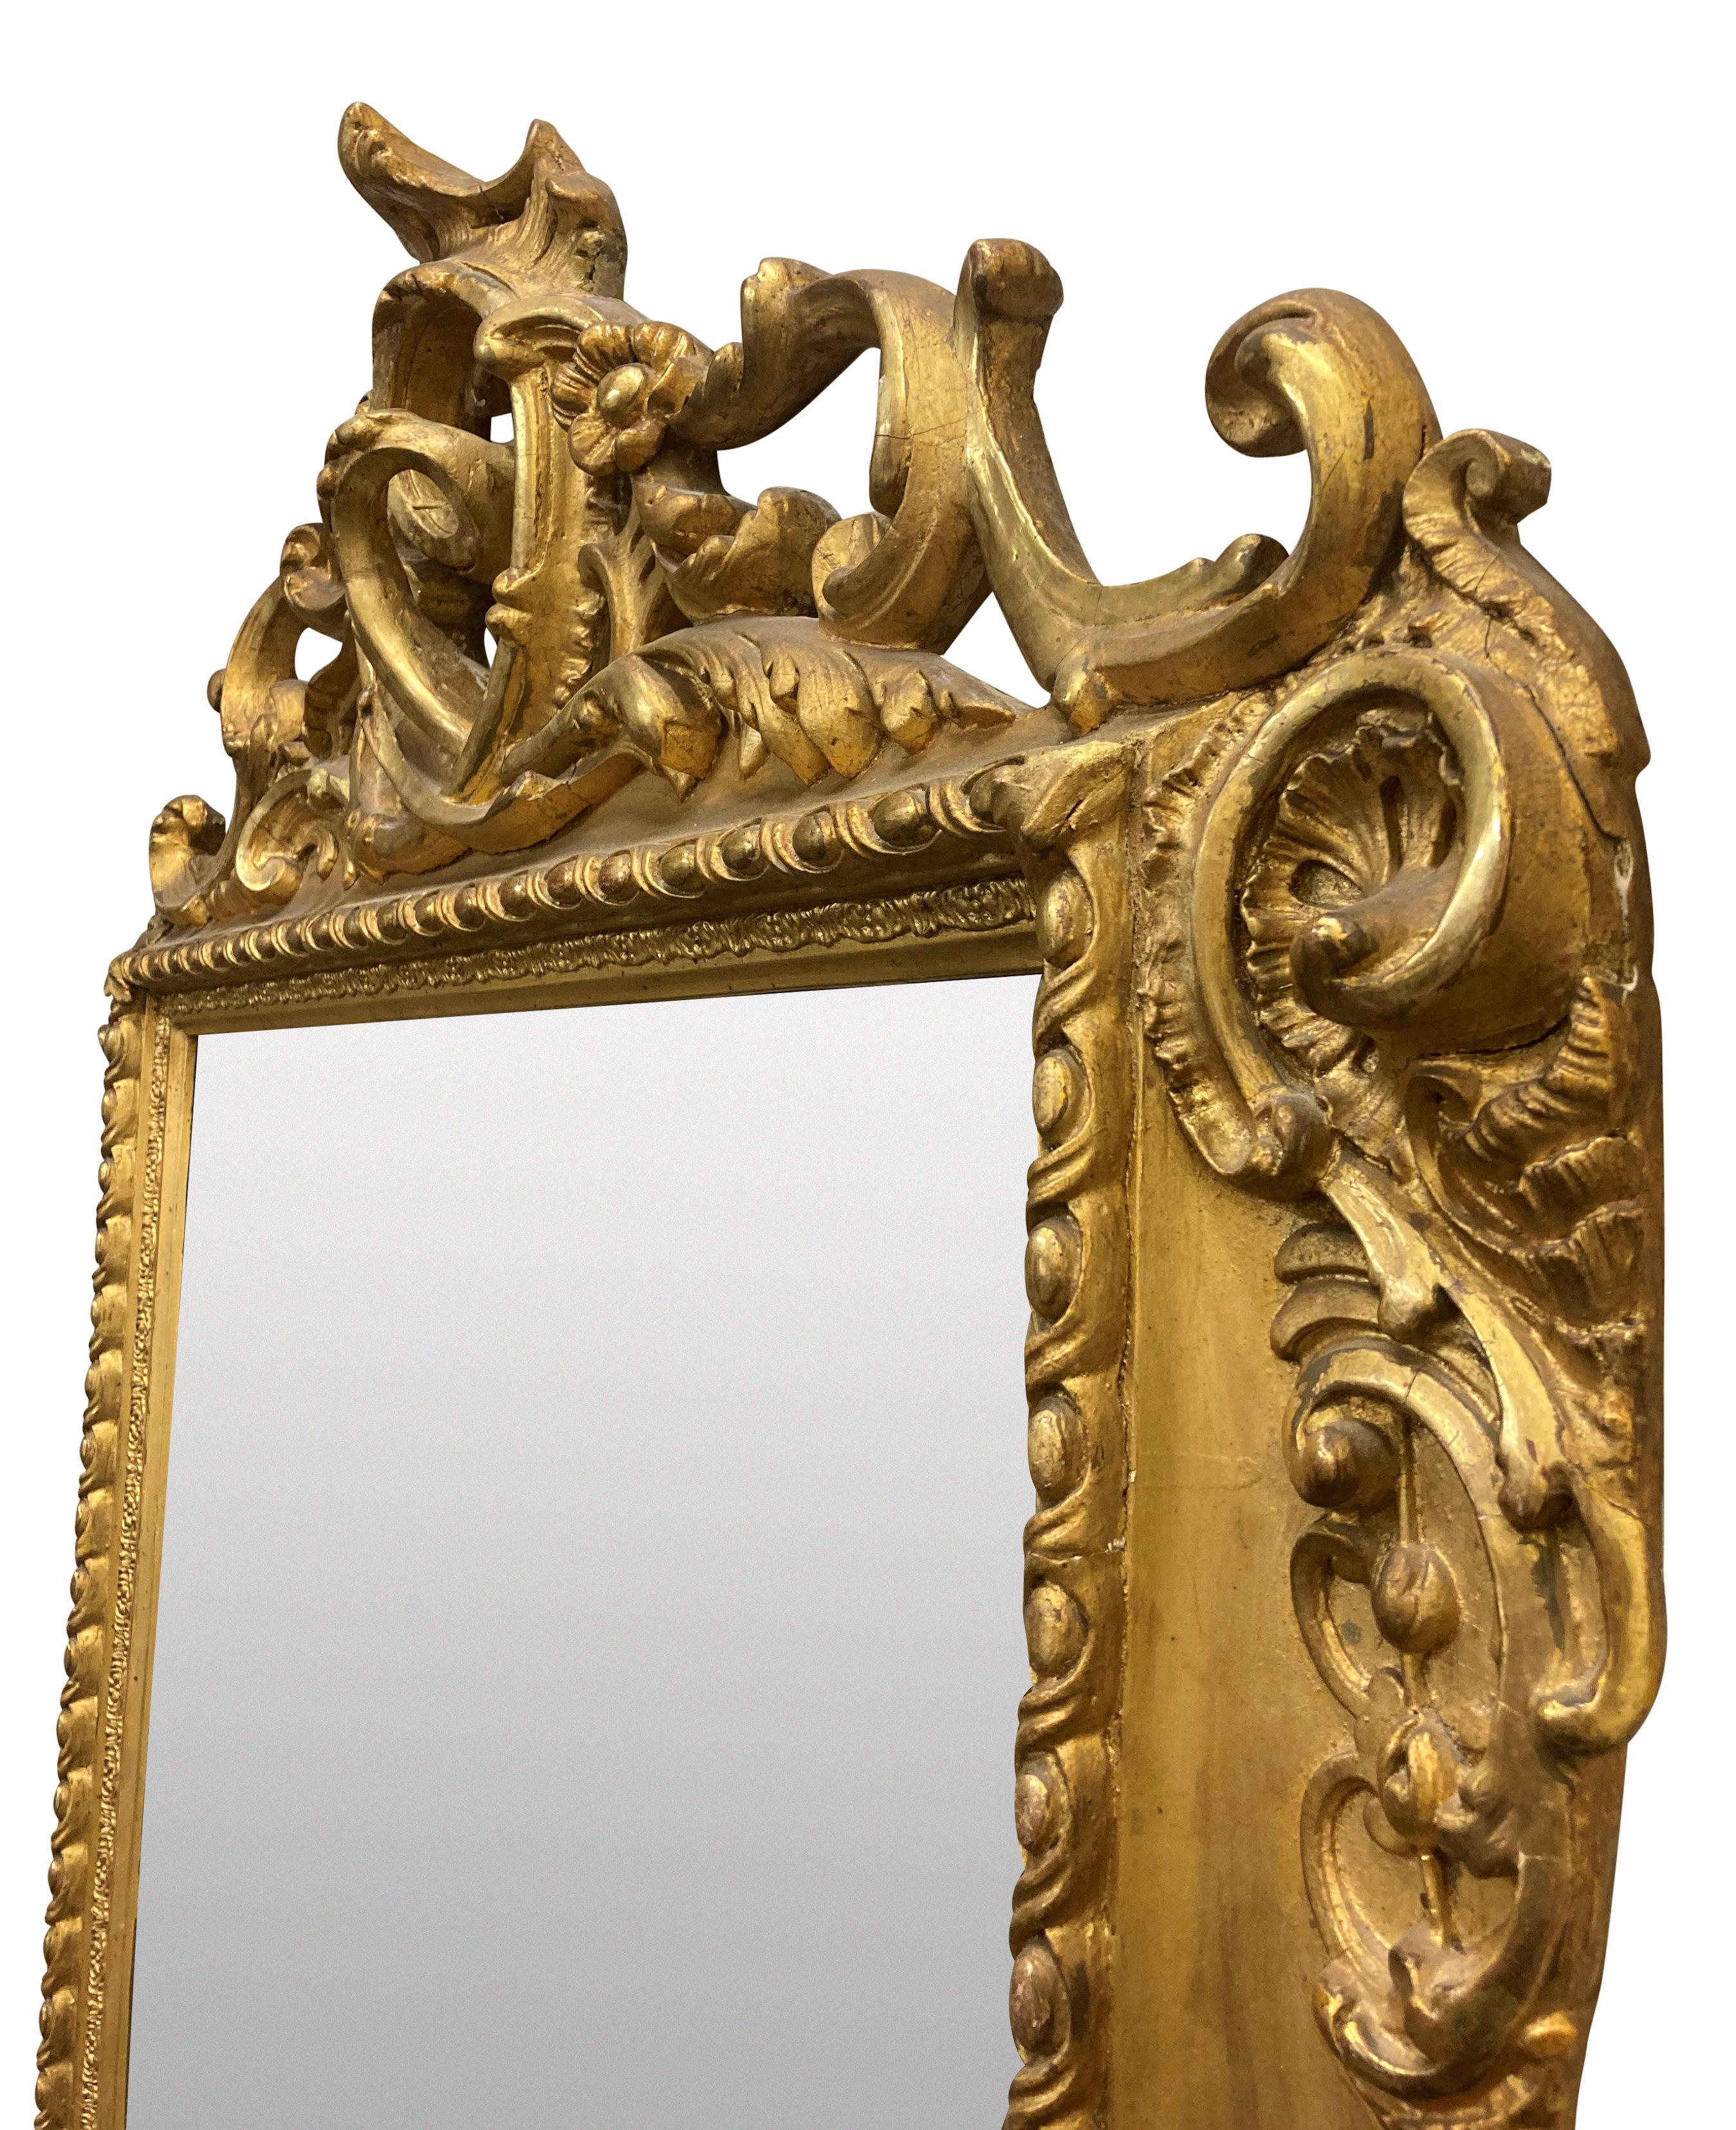 Miroir en bois sculpté et doré du XIXe siècle, en suite avec une table console assortie, vendue séparément. Estampillé 